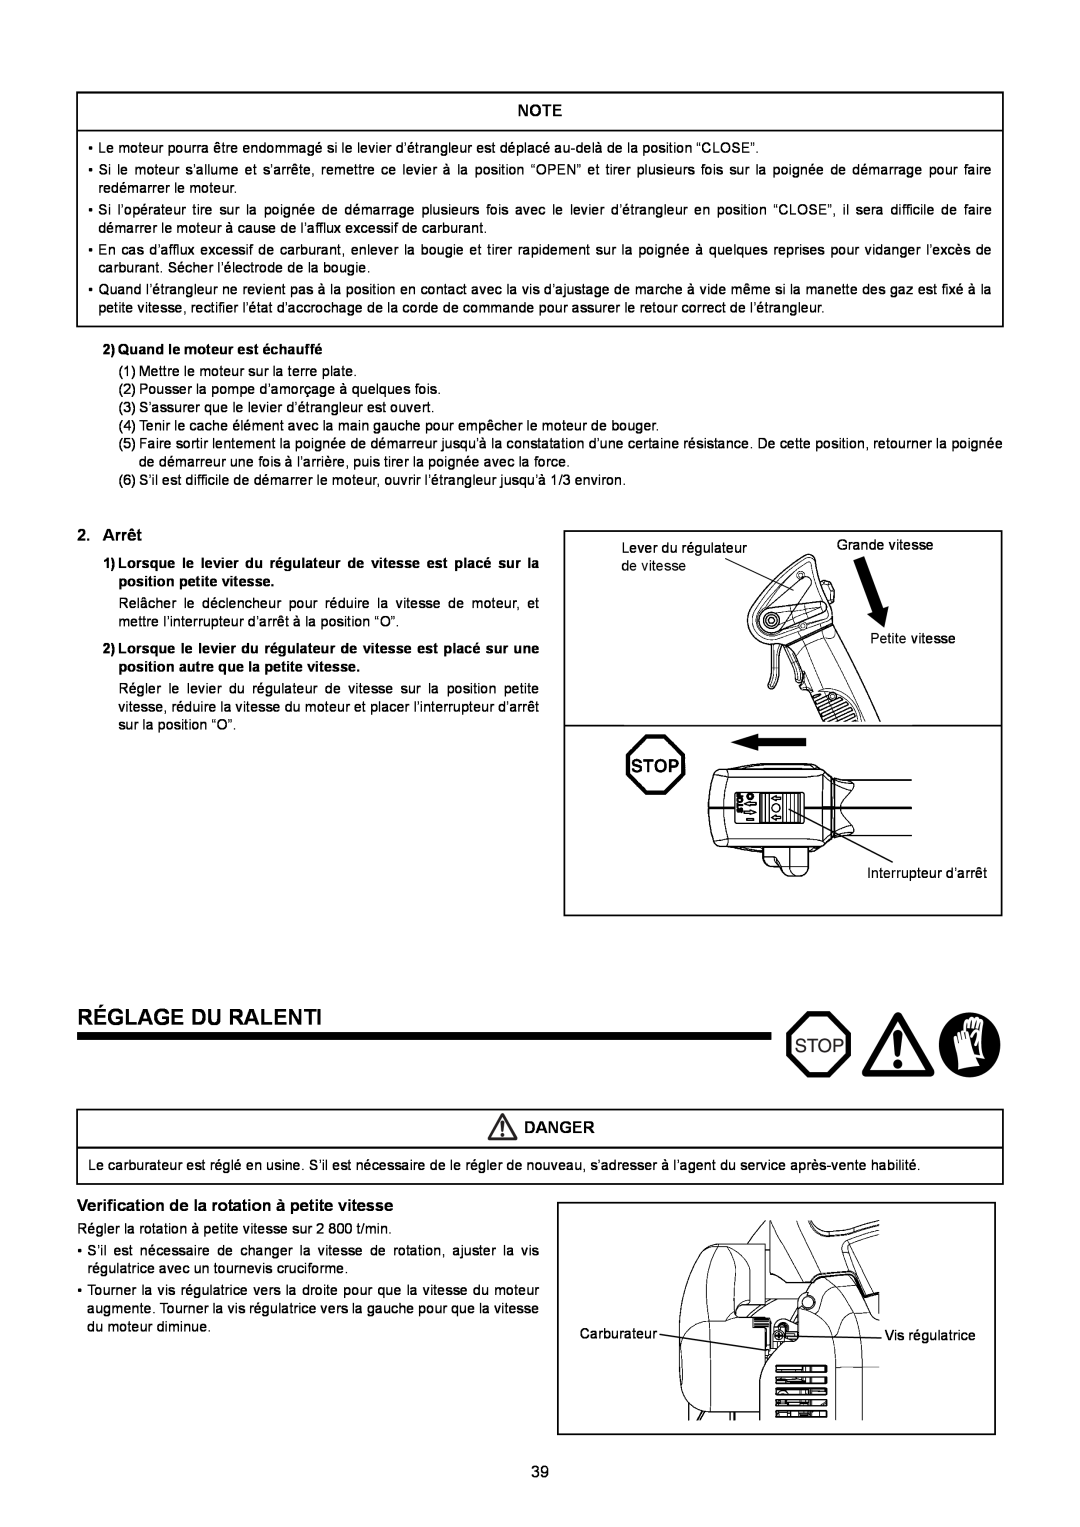 Makita BBX7600CA instruction manual Réglage Du Ralenti, Arrêt, Danger, Verification de la rotation à petite vitesse 